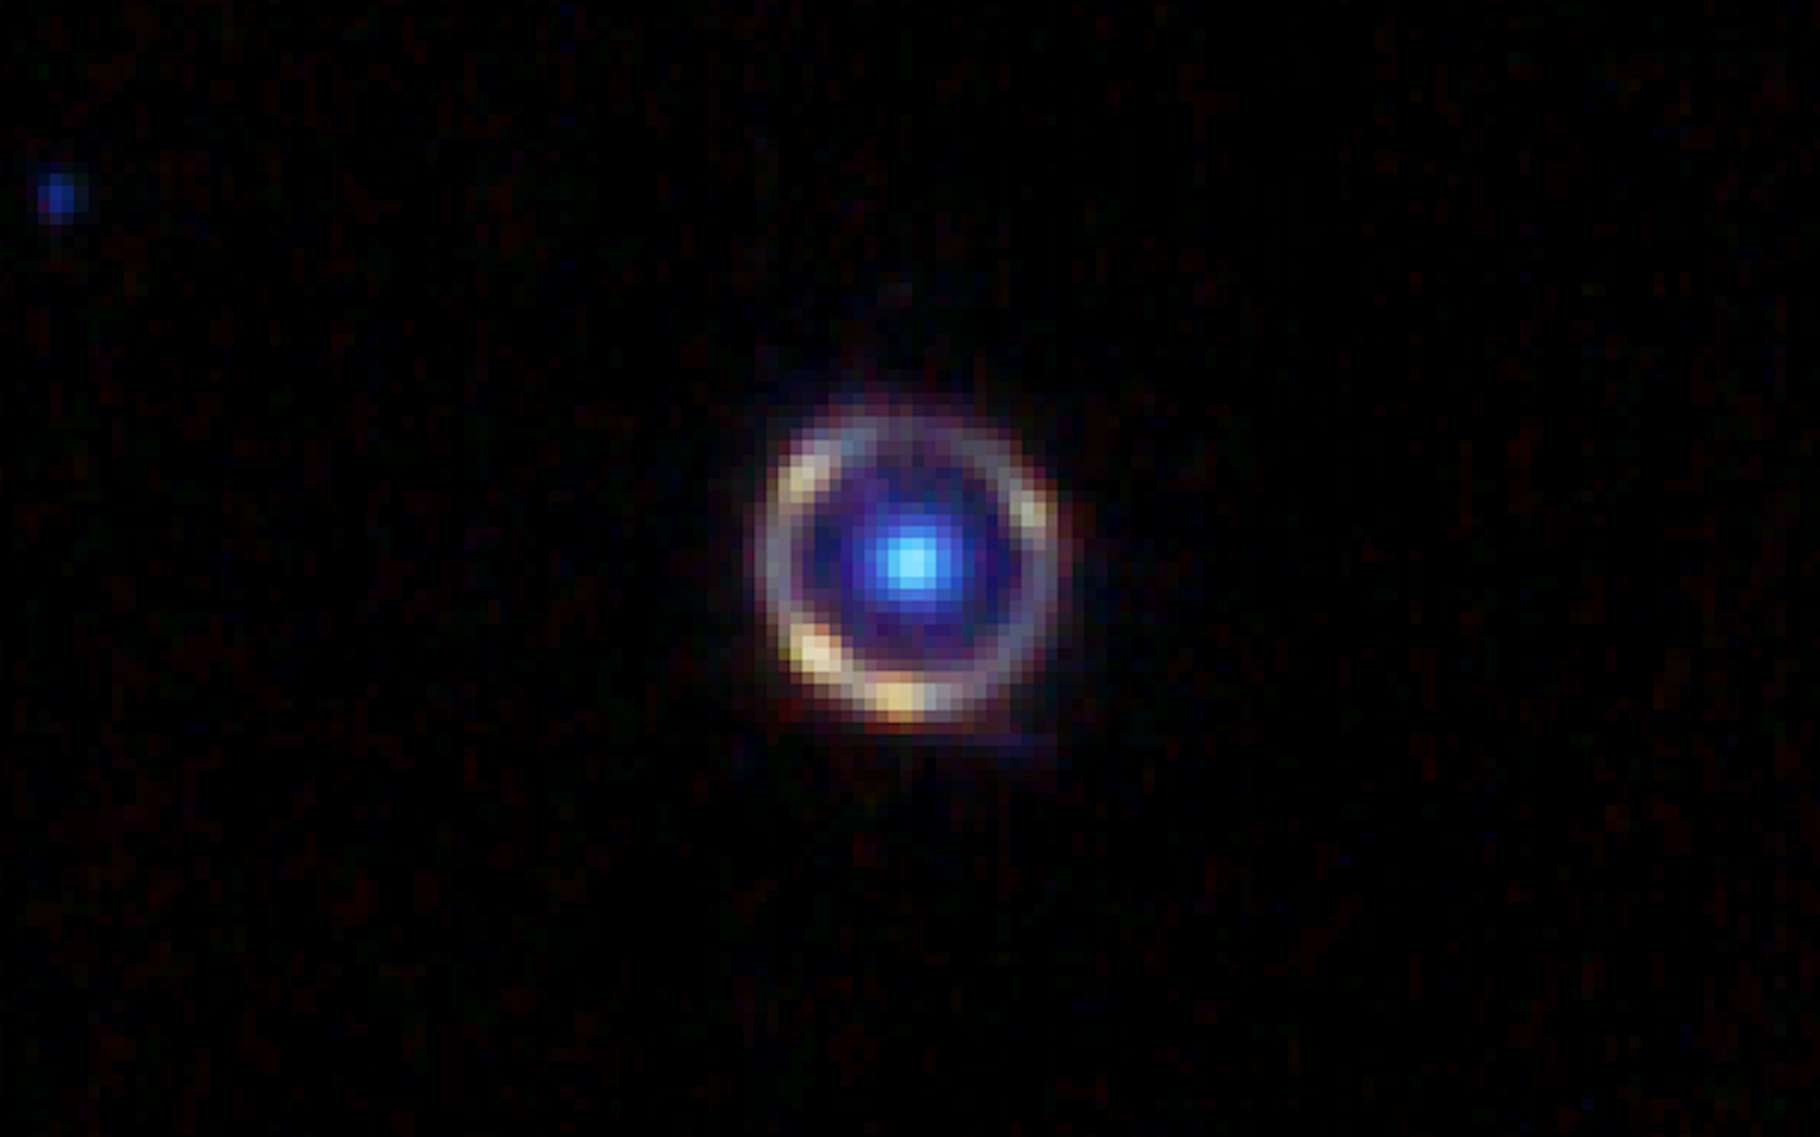 Le télescope James-Webb a photographié un anneau d'Einstein quasi parfait !